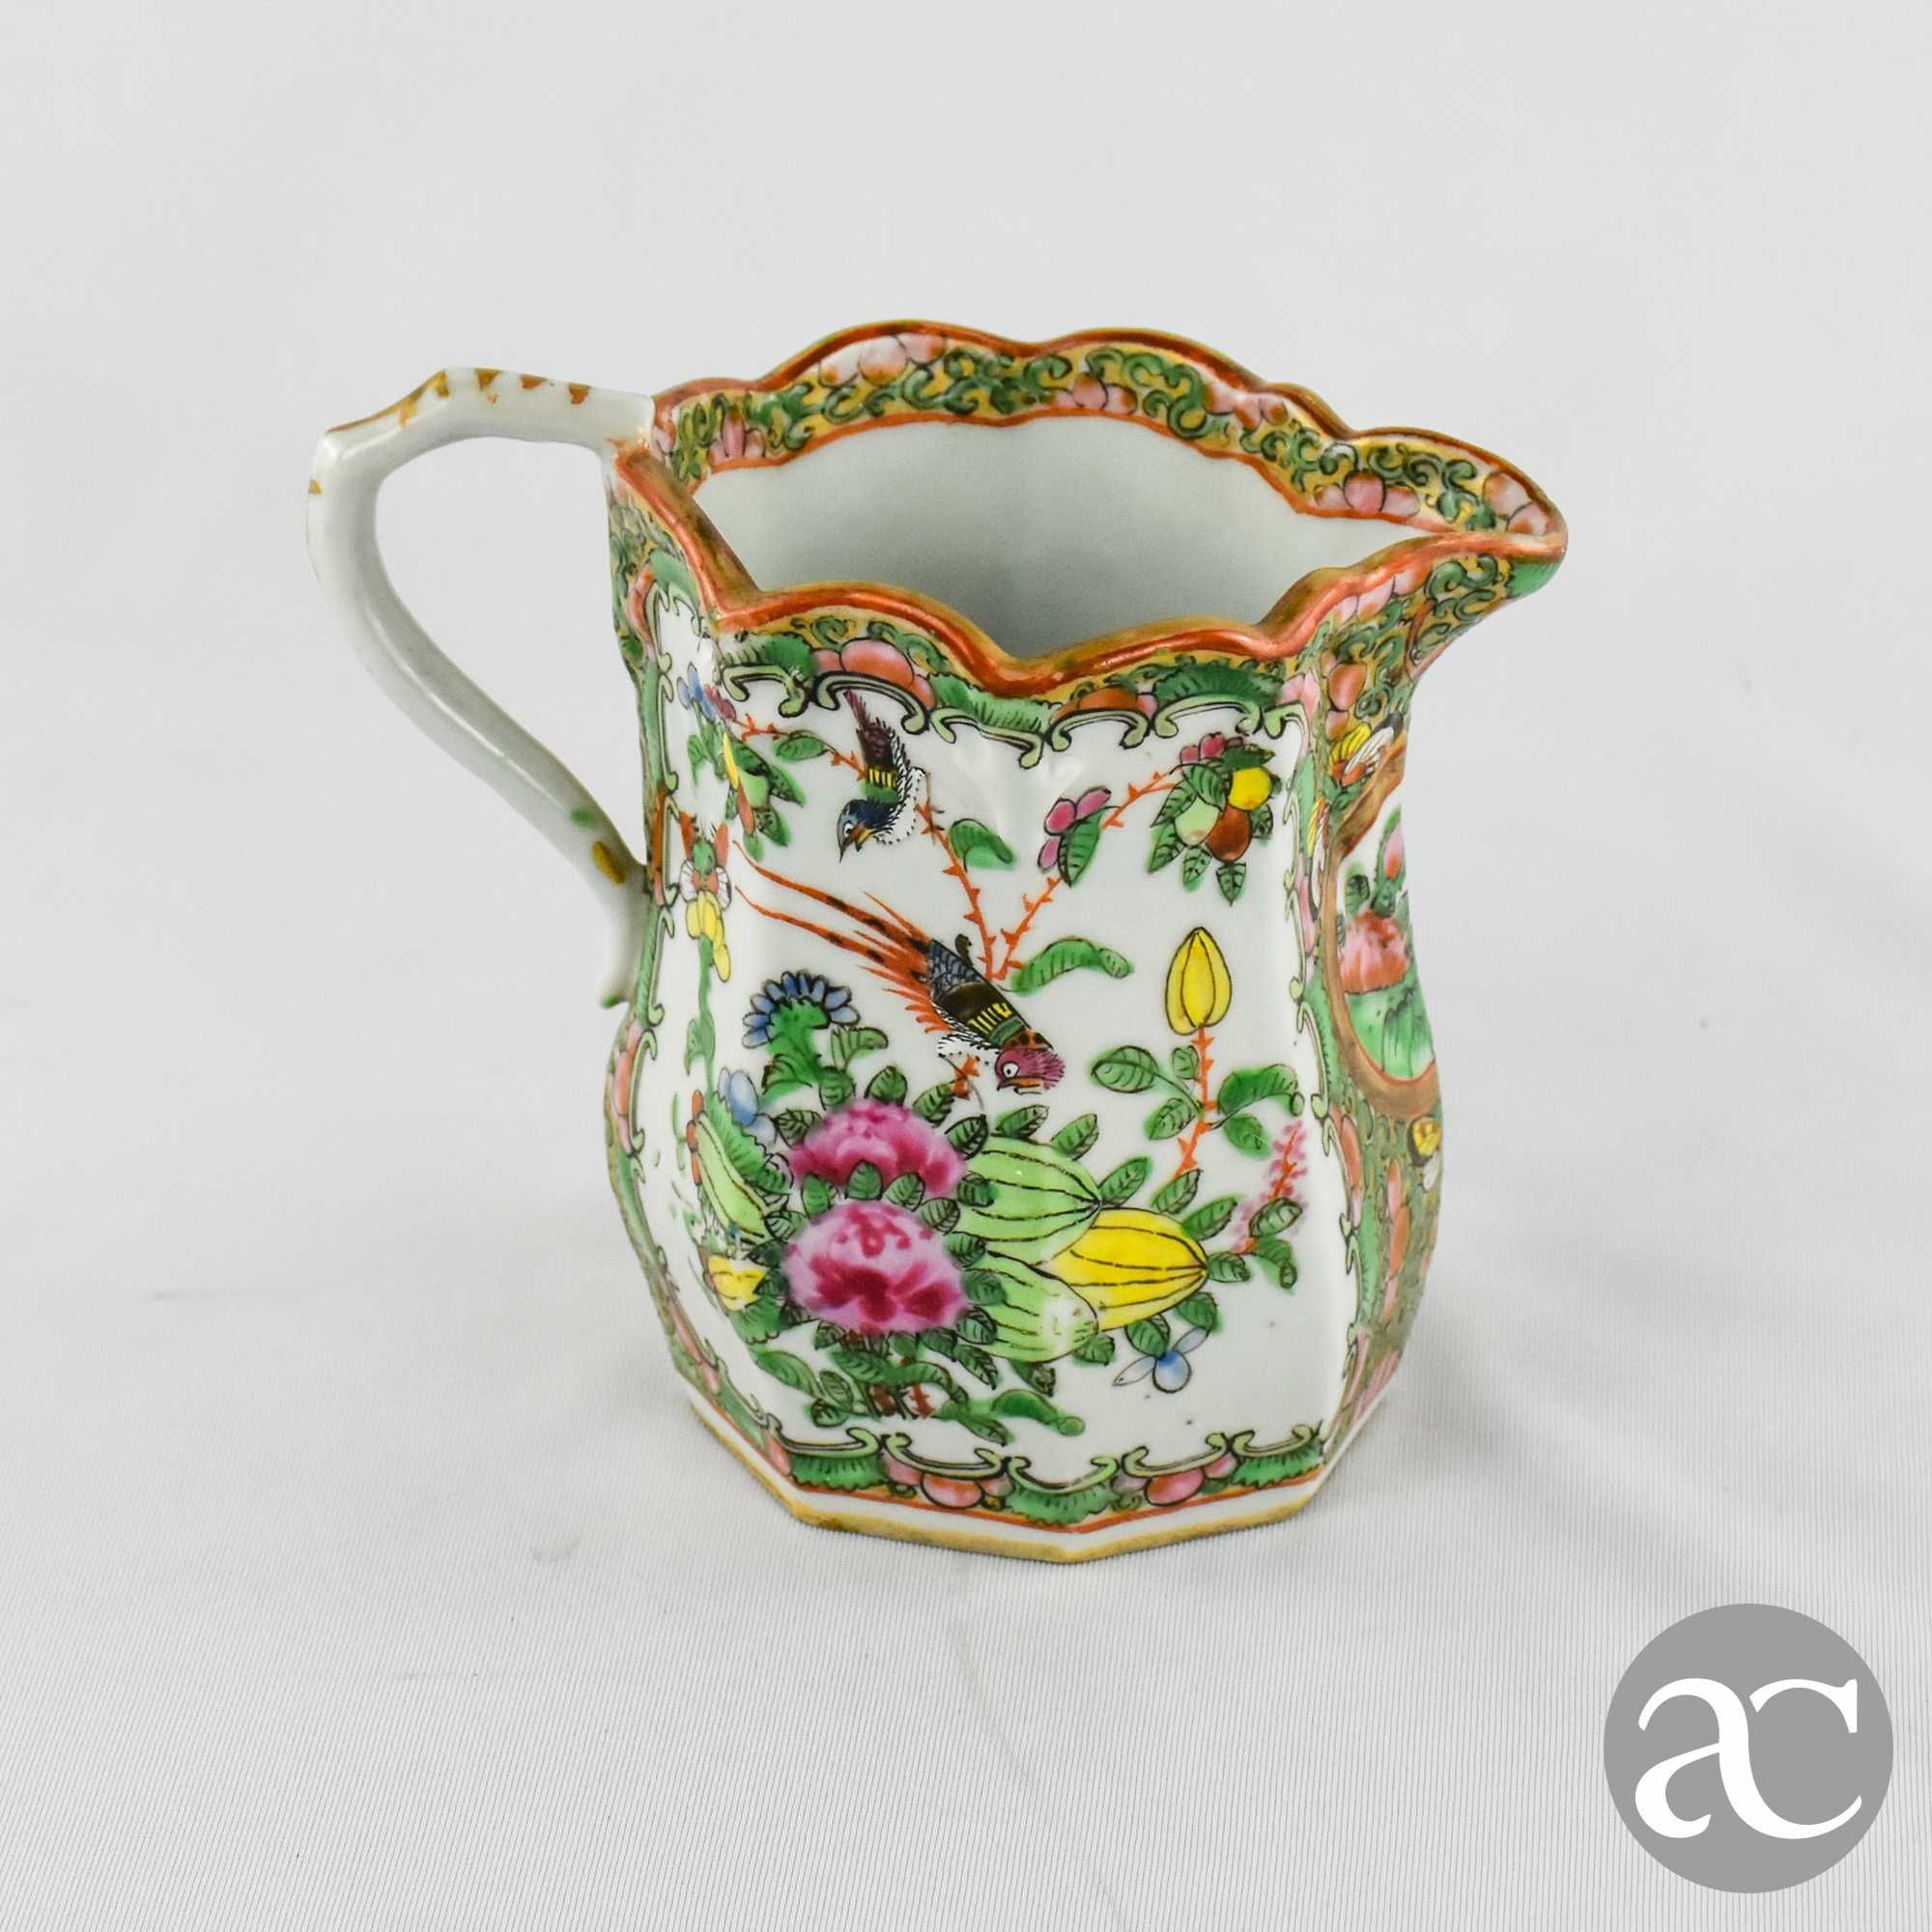 Jarro / Leiteira Porcelana da China, decoração Mandarim, séc. XIX